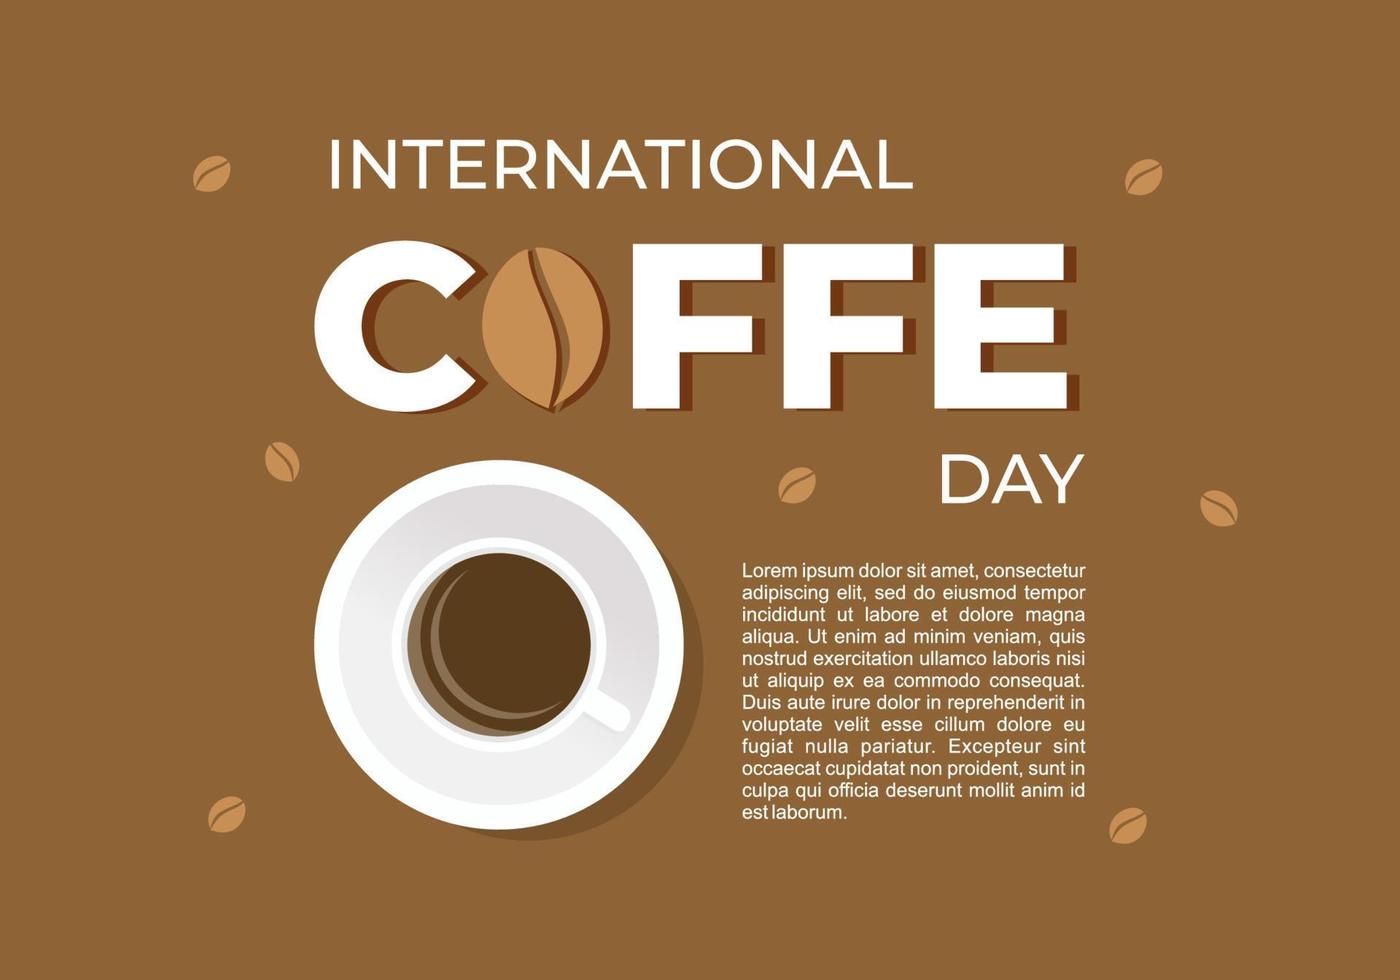 internationales kaffeetag-hintergrundbannerplakat mit tasse und bohne vektor